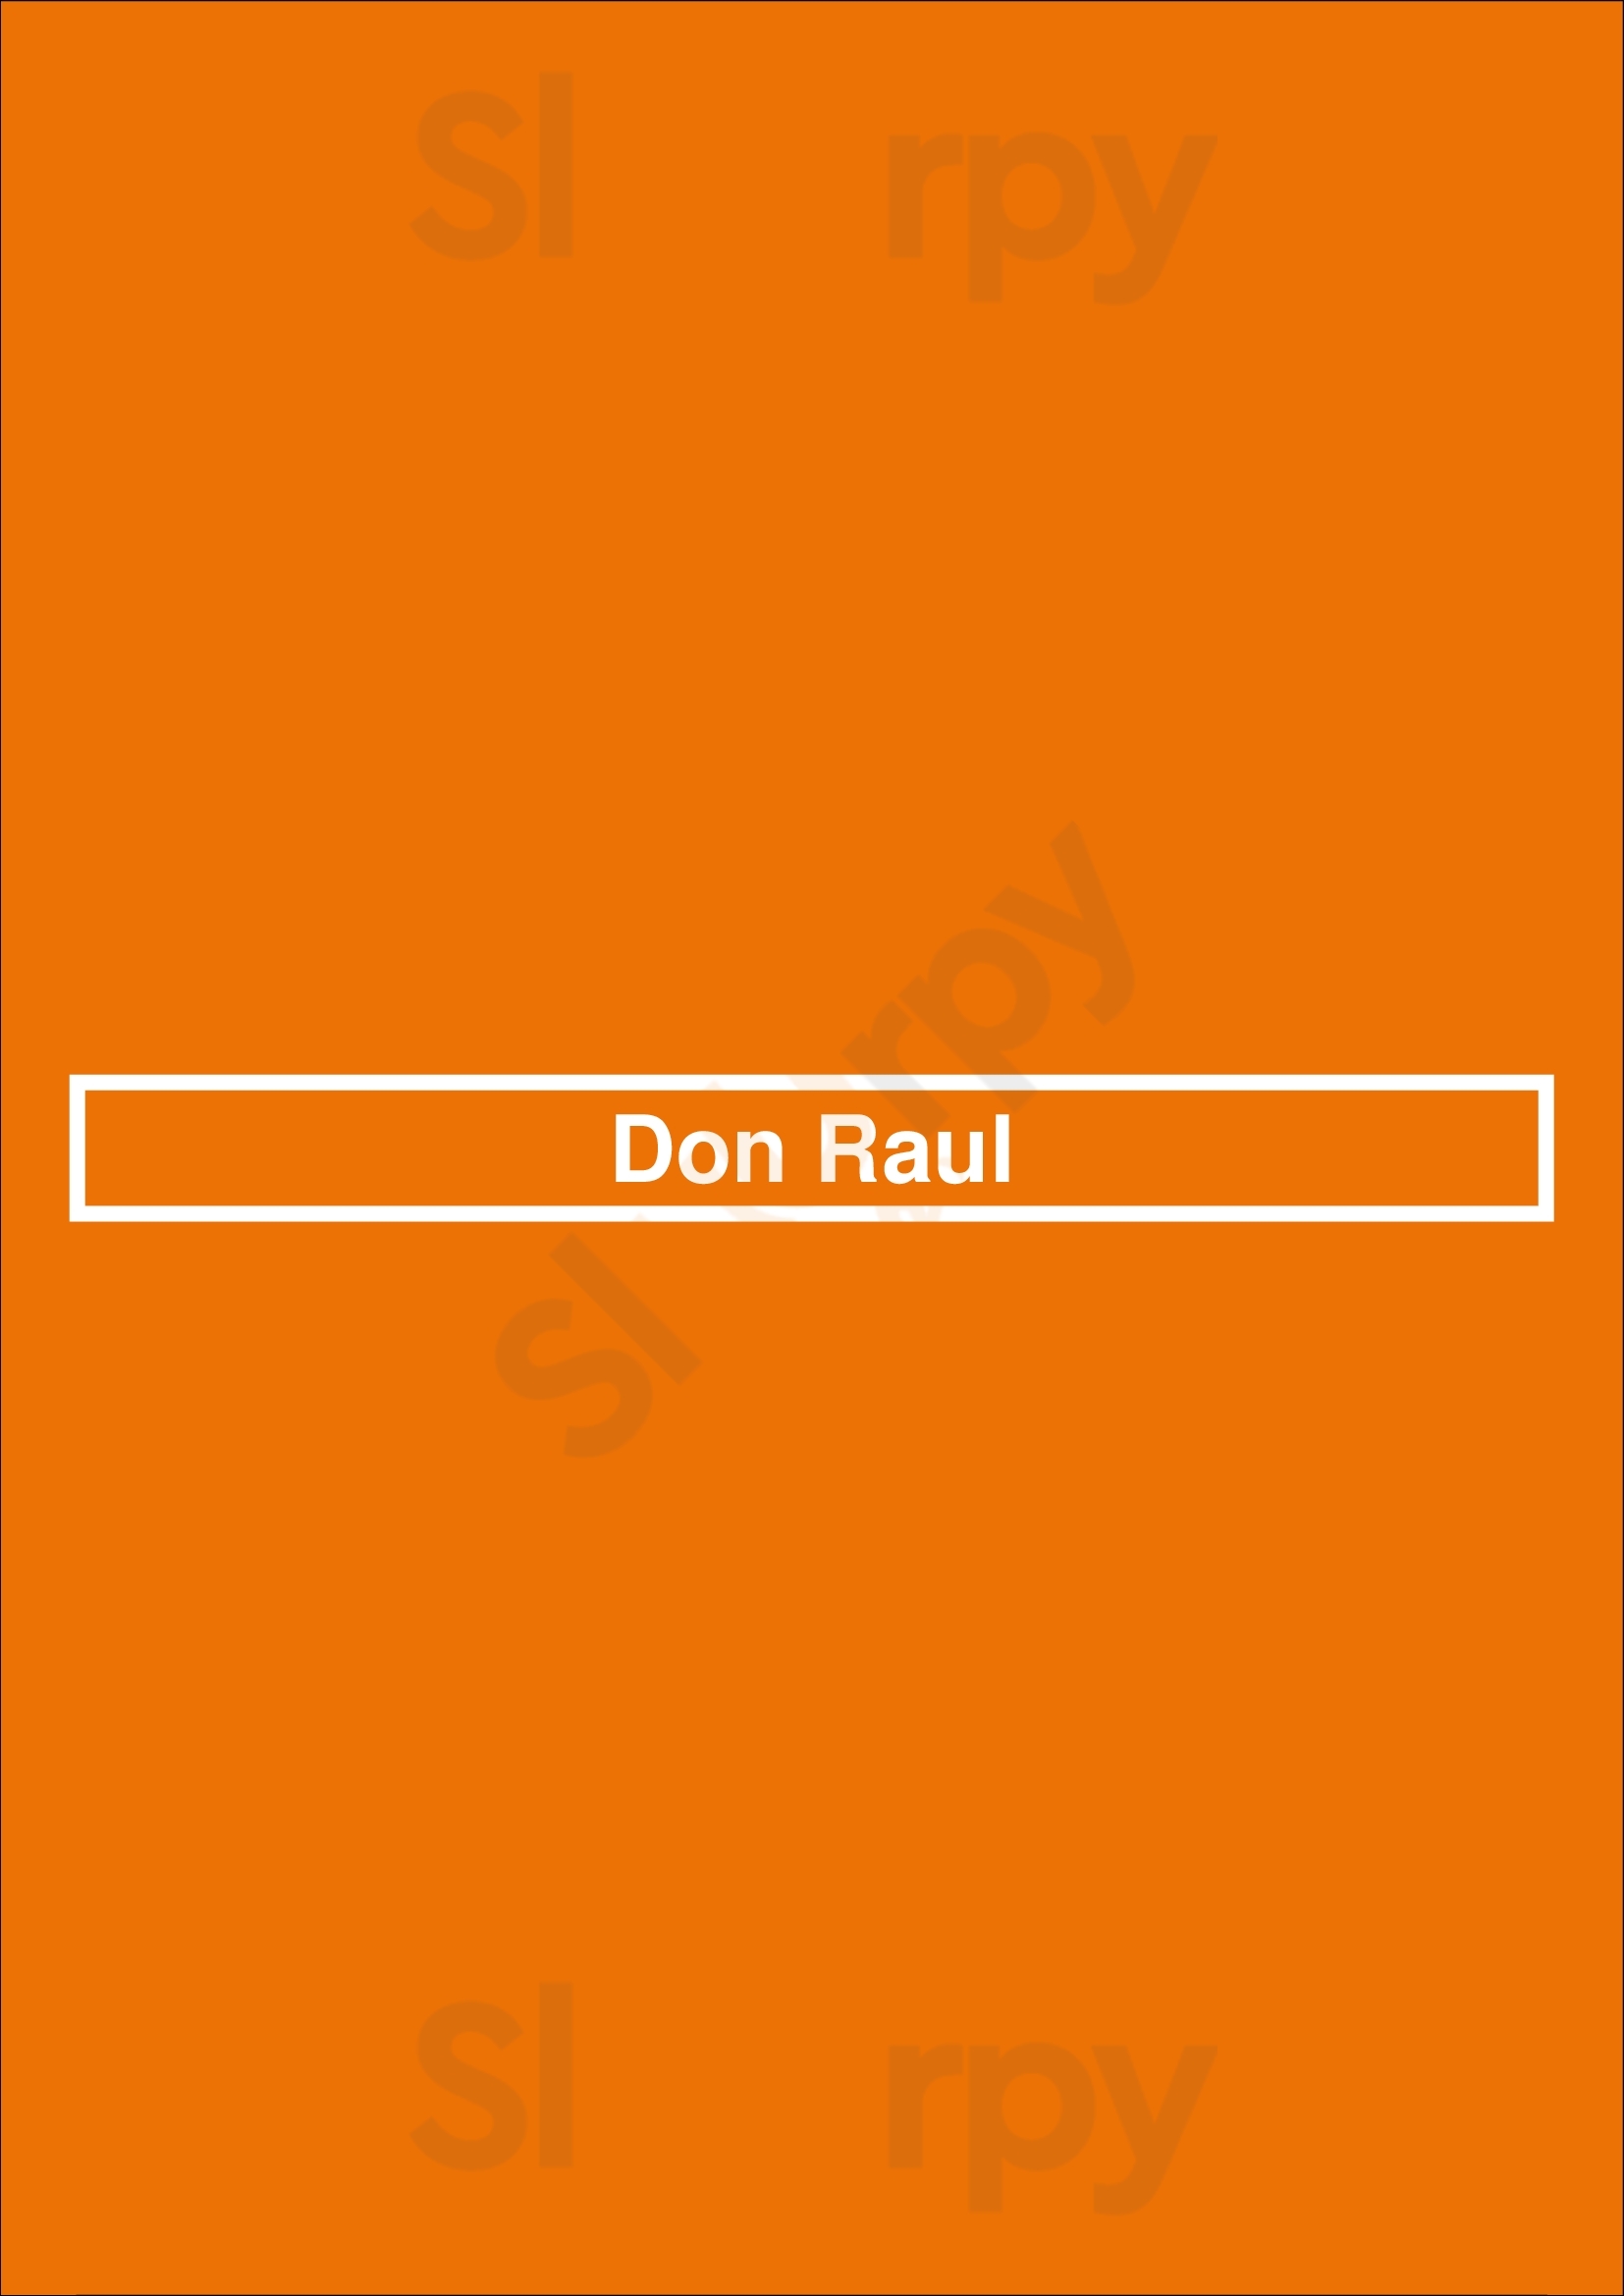 Don Raul Minneapolis Menu - 1